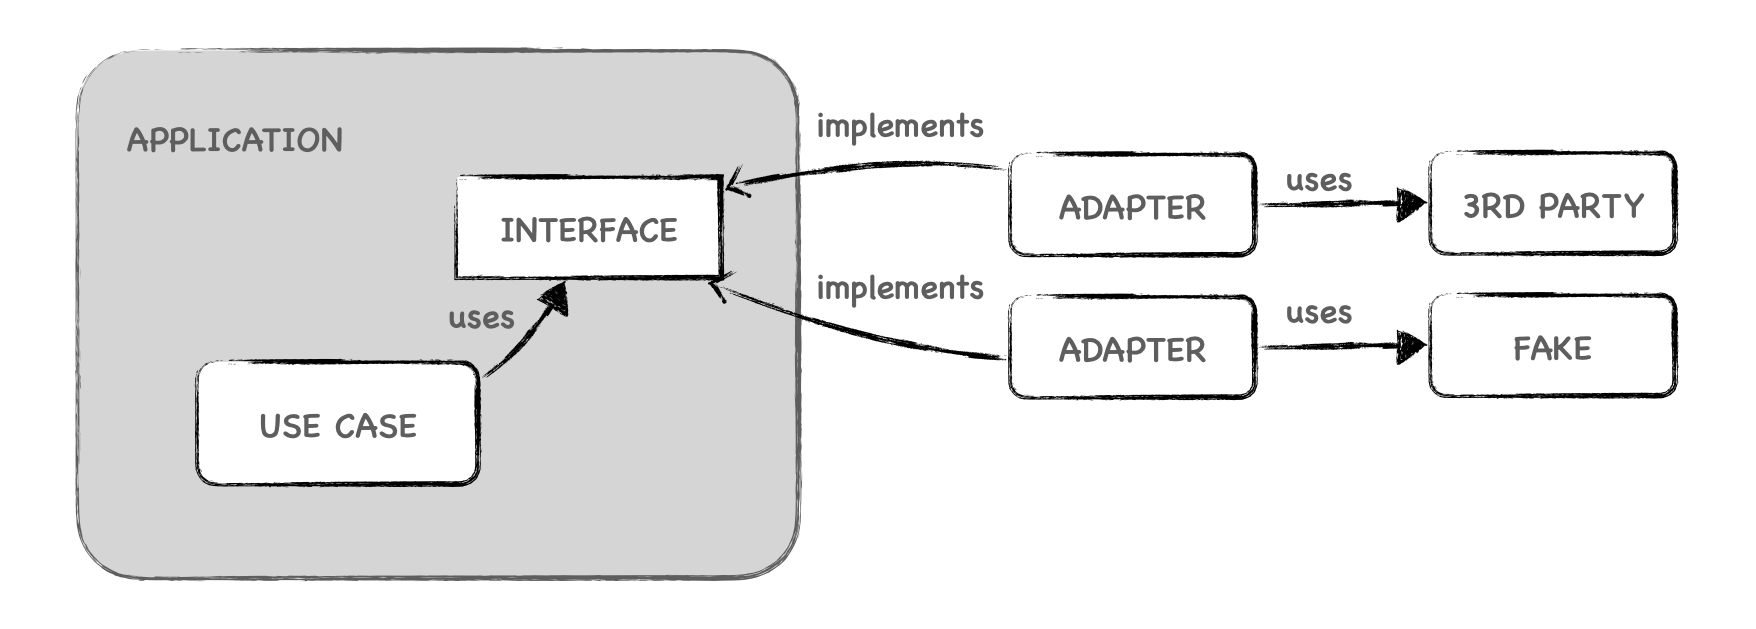 Diagrama mostrando un patrón port and adapters en el que un caso de uso depende de una interfaz implementada por dos adaptadores